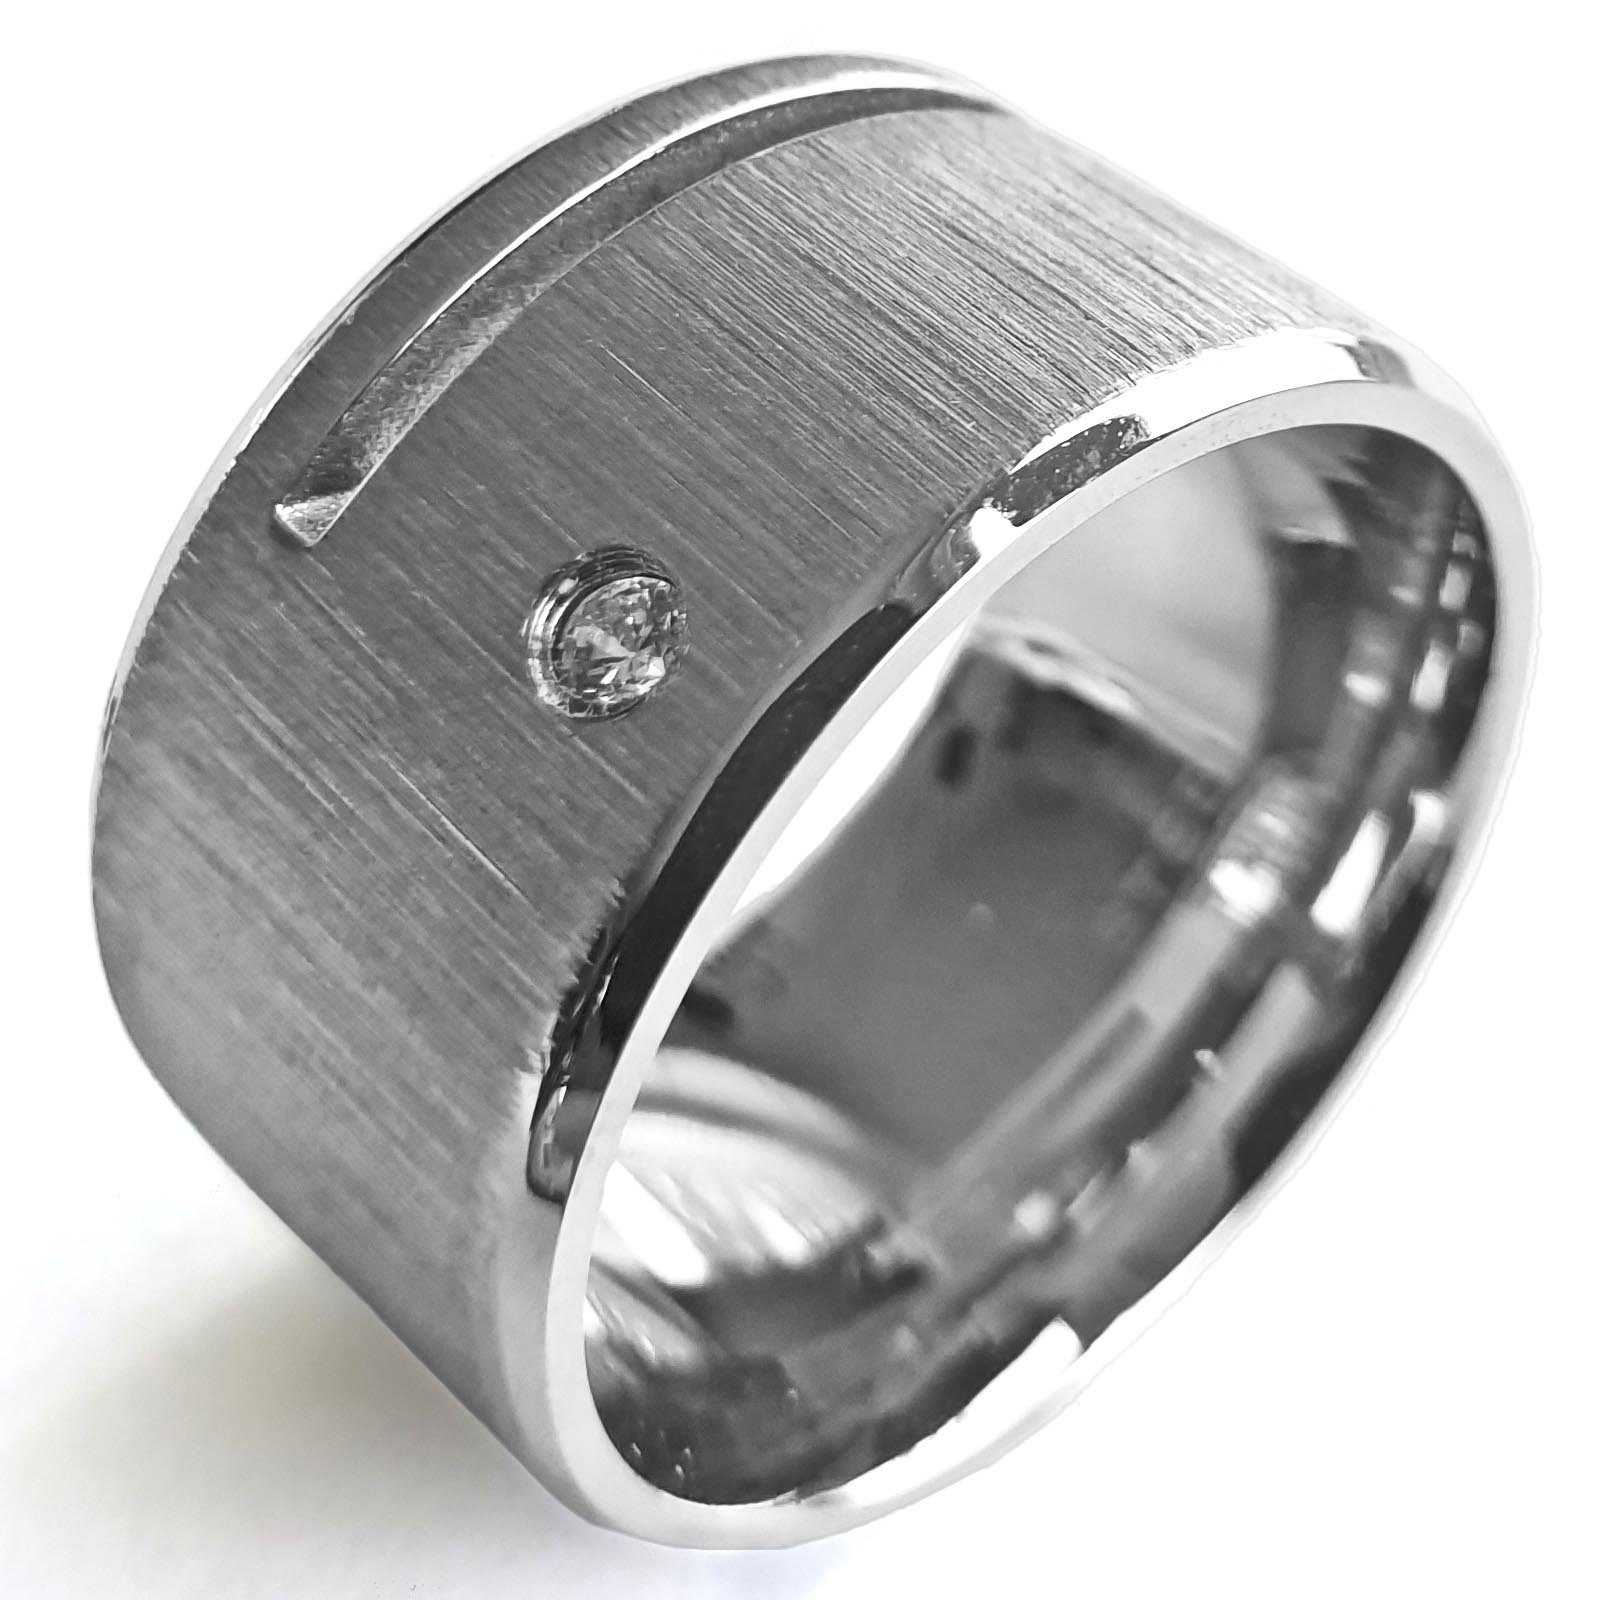 viva-adorno Fingerring Herren Edelstahl Ring Breit XL Zirkonia Oberfläche matt gebürstet, Herrenring Daumenring D1a